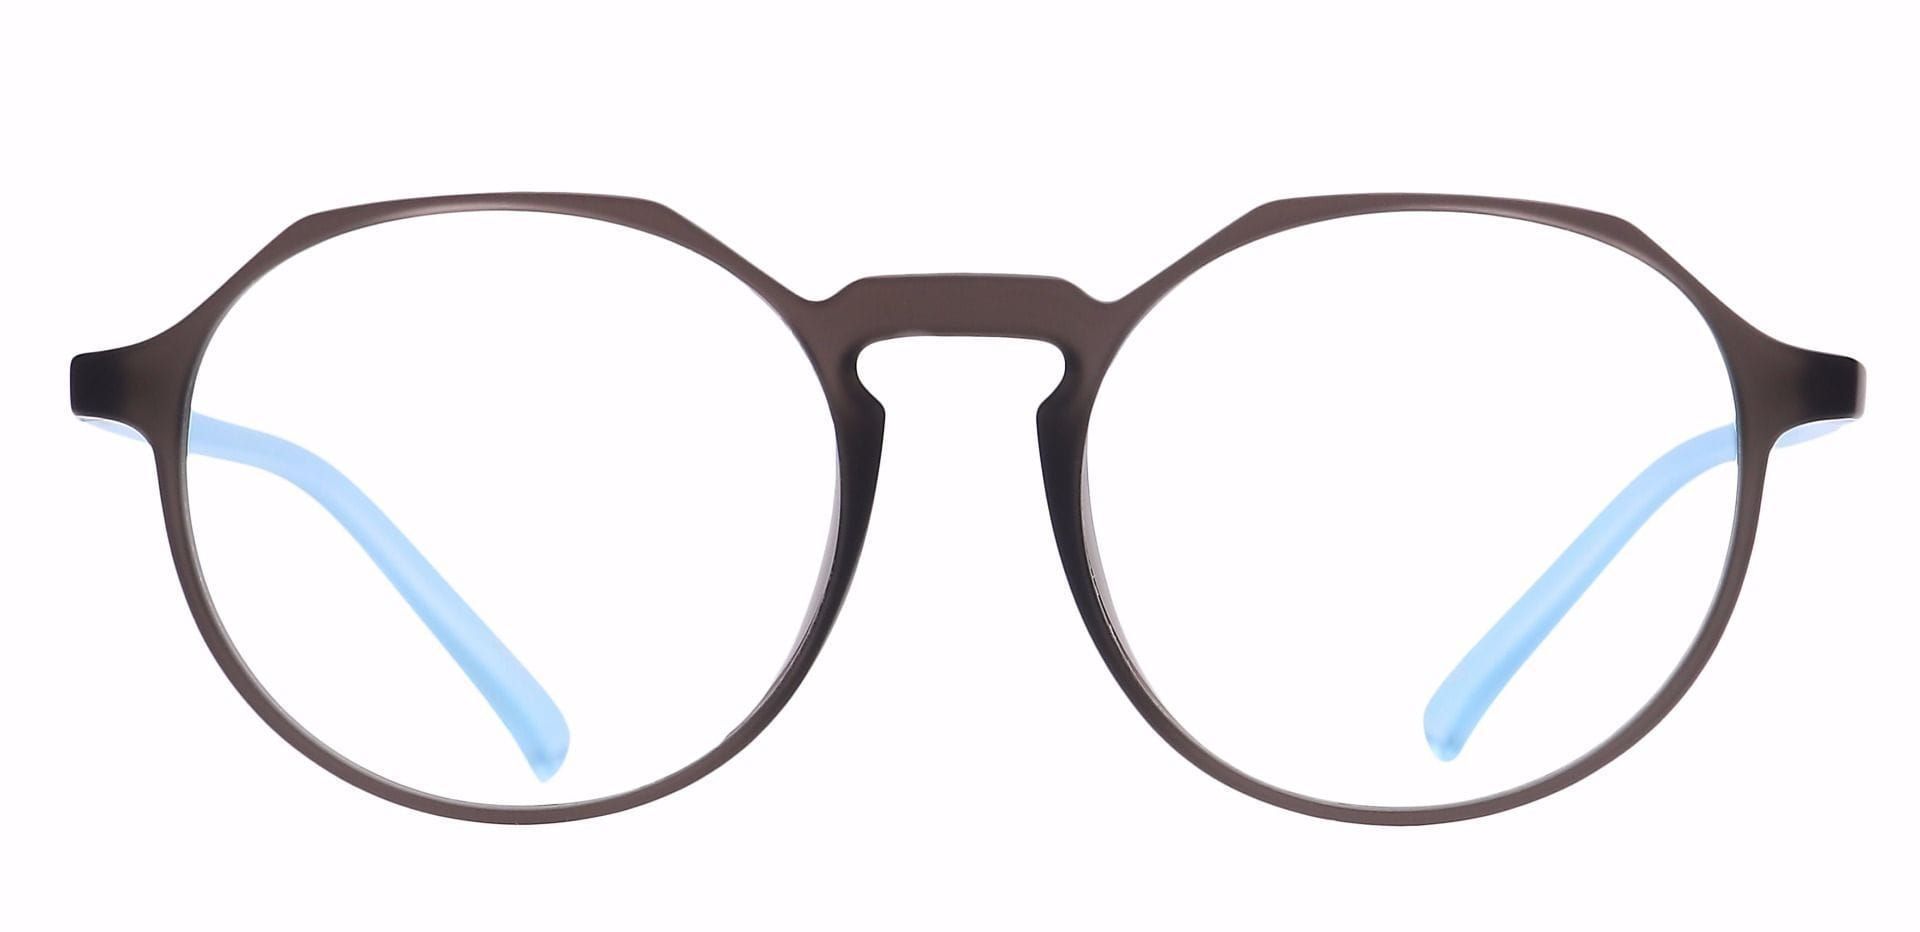 Dash Oval Prescription Glasses - Gray